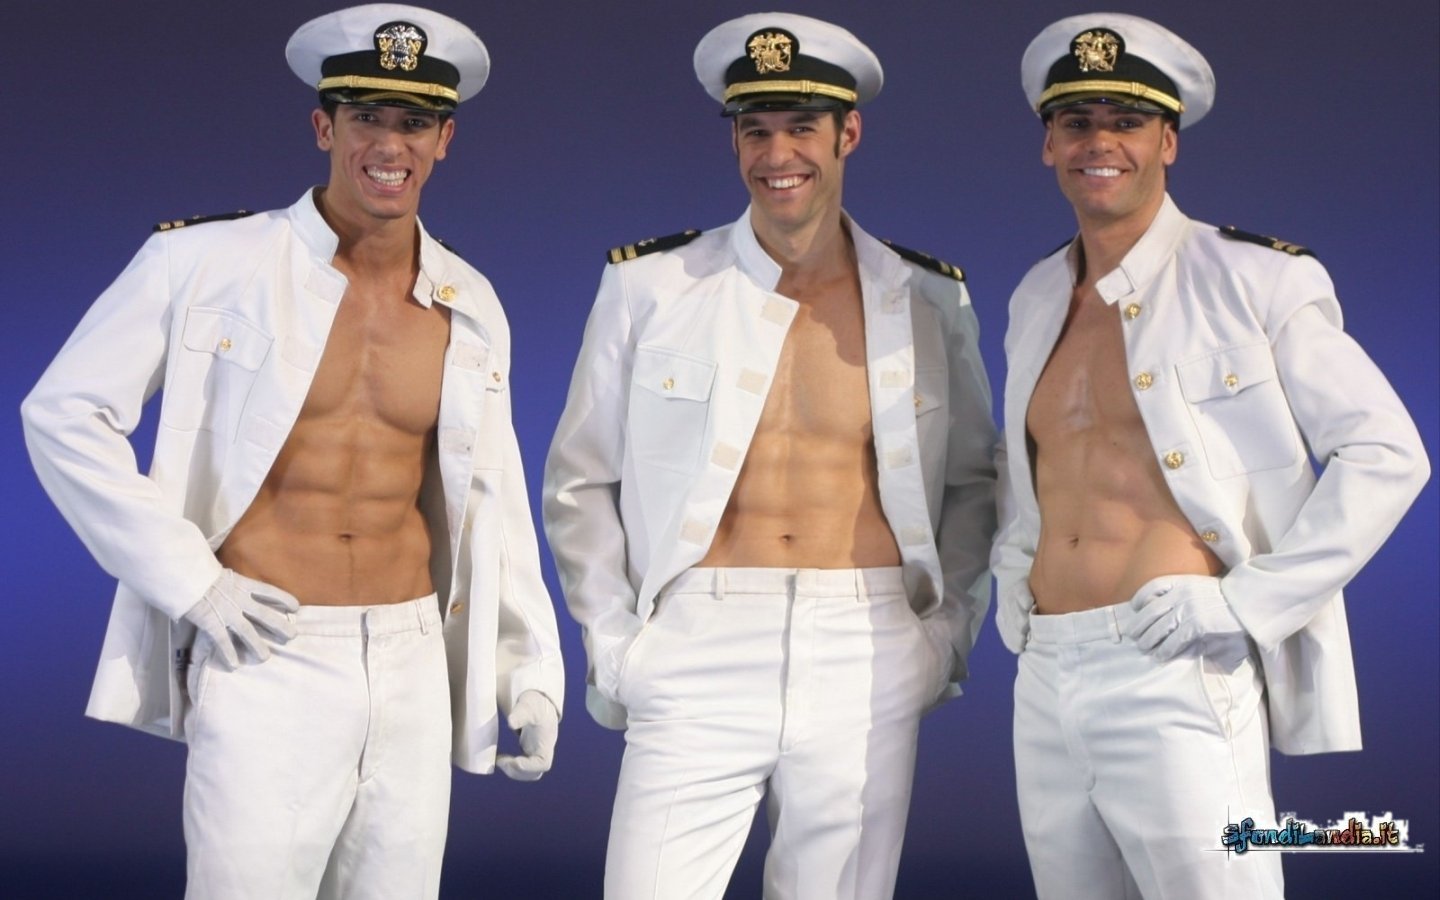 Sexy Sailors